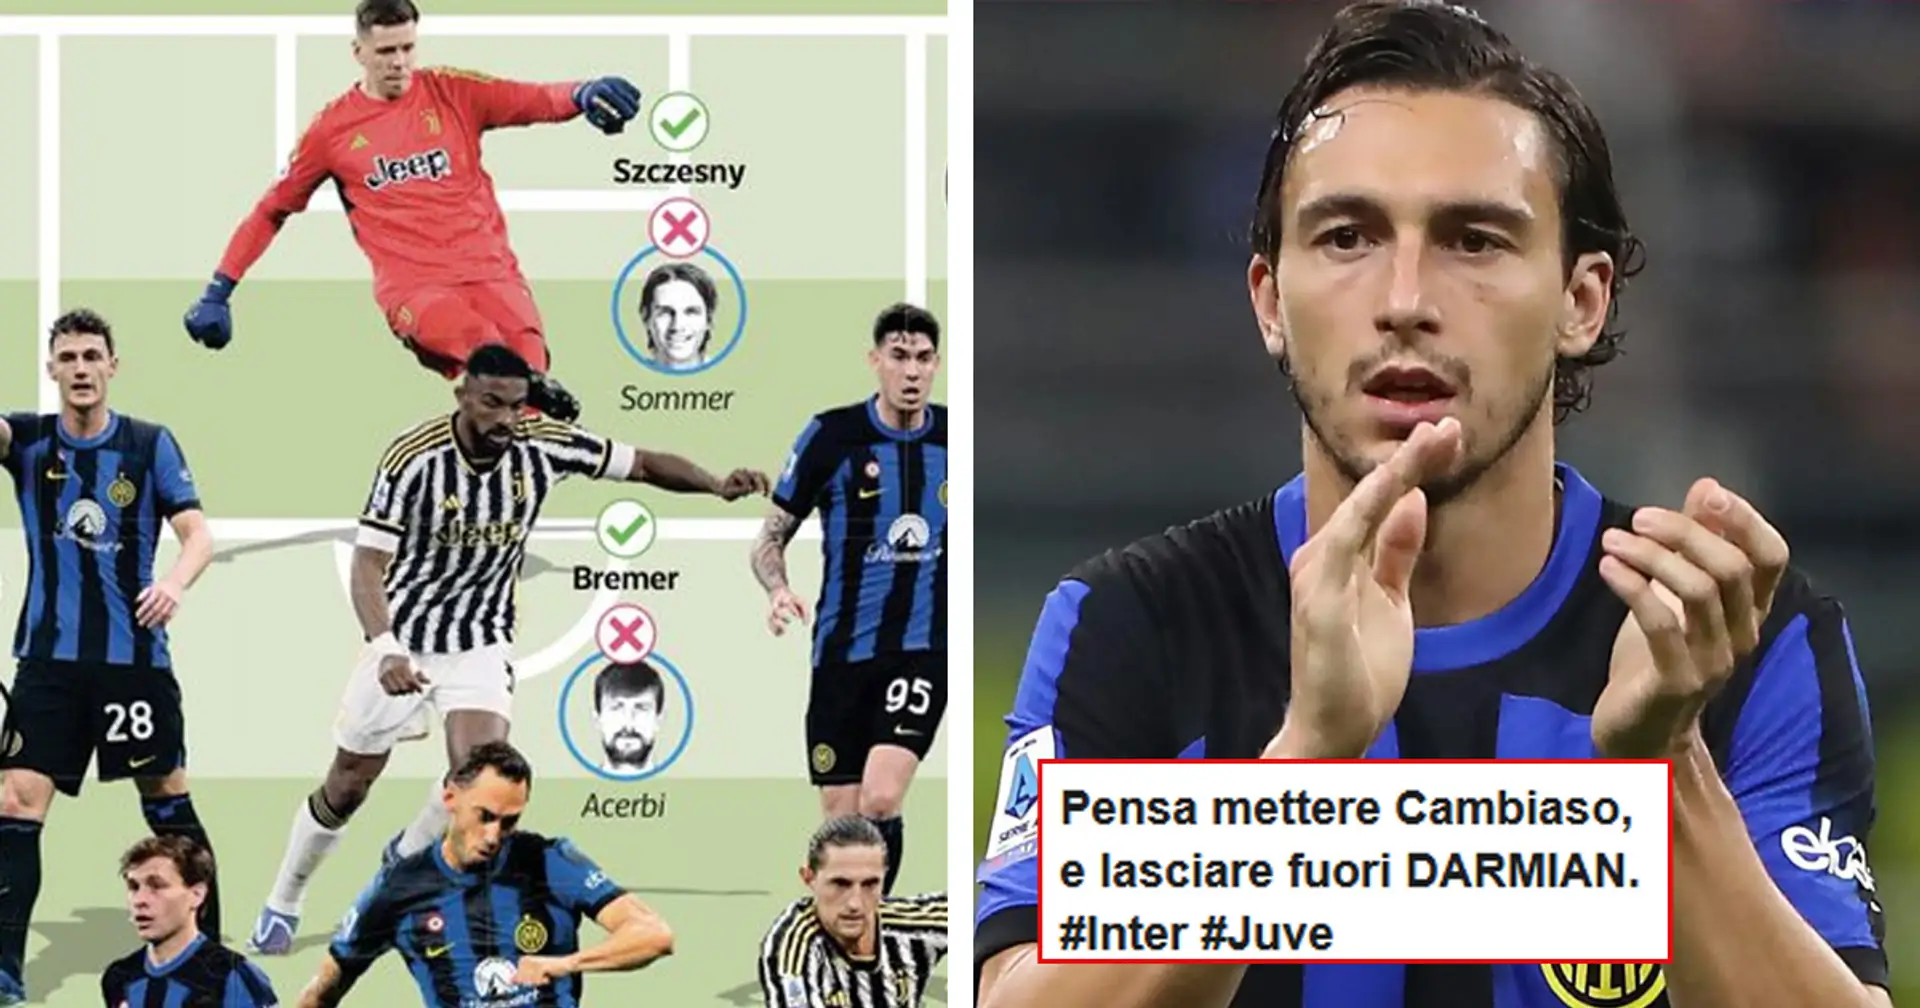 La formazione 'combinata' del derby d'Italia! La reazione dei tifosi interisti: "Insieme meno forti dell'Inter da sola!"